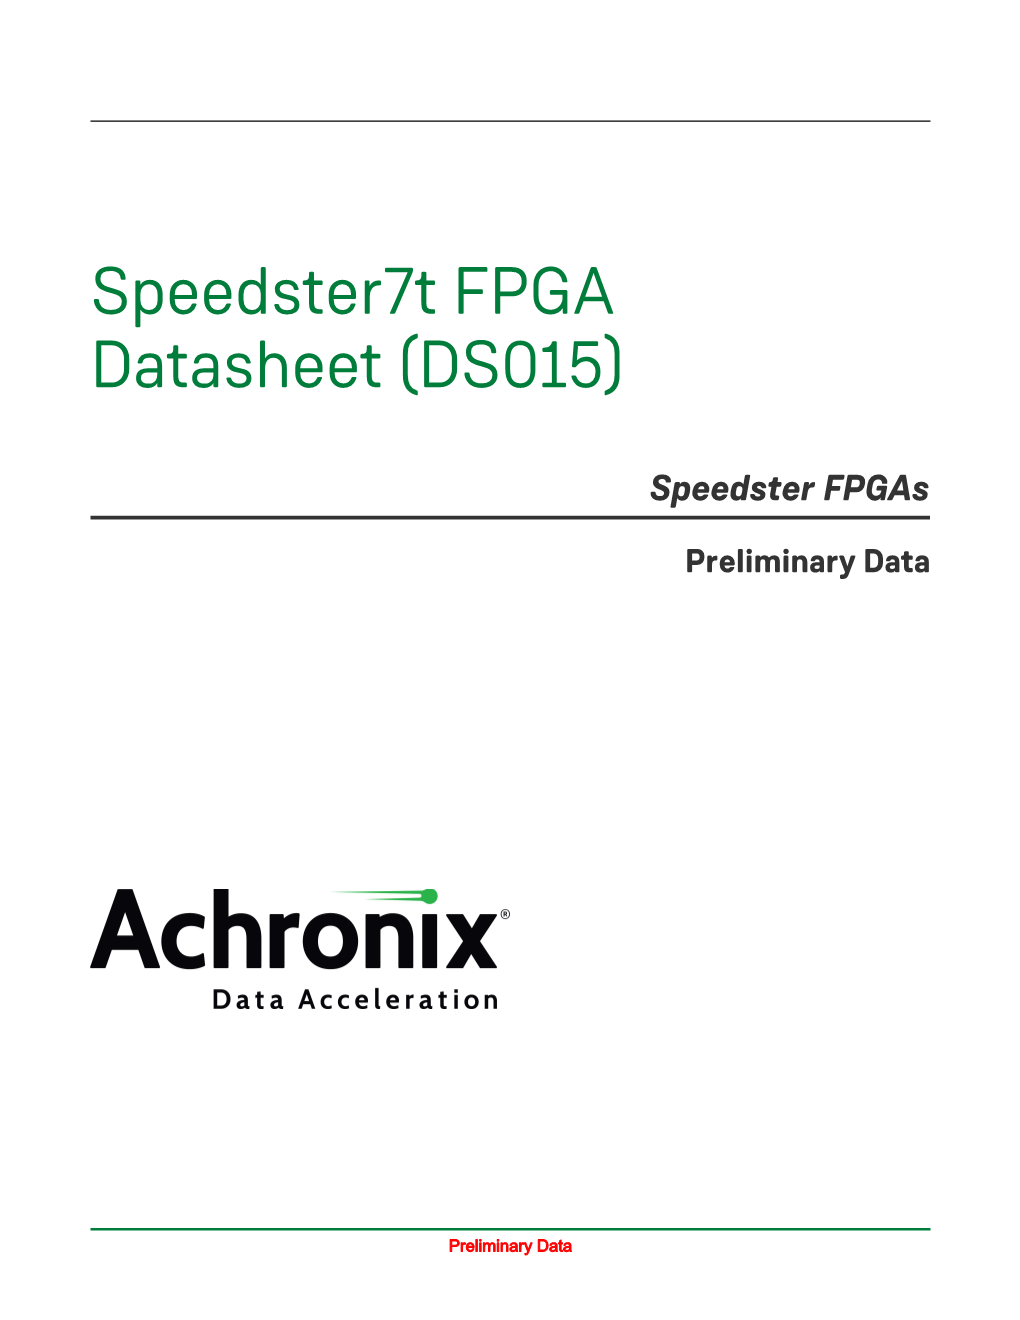 Speedster7t FPGA Datasheet (DS015)